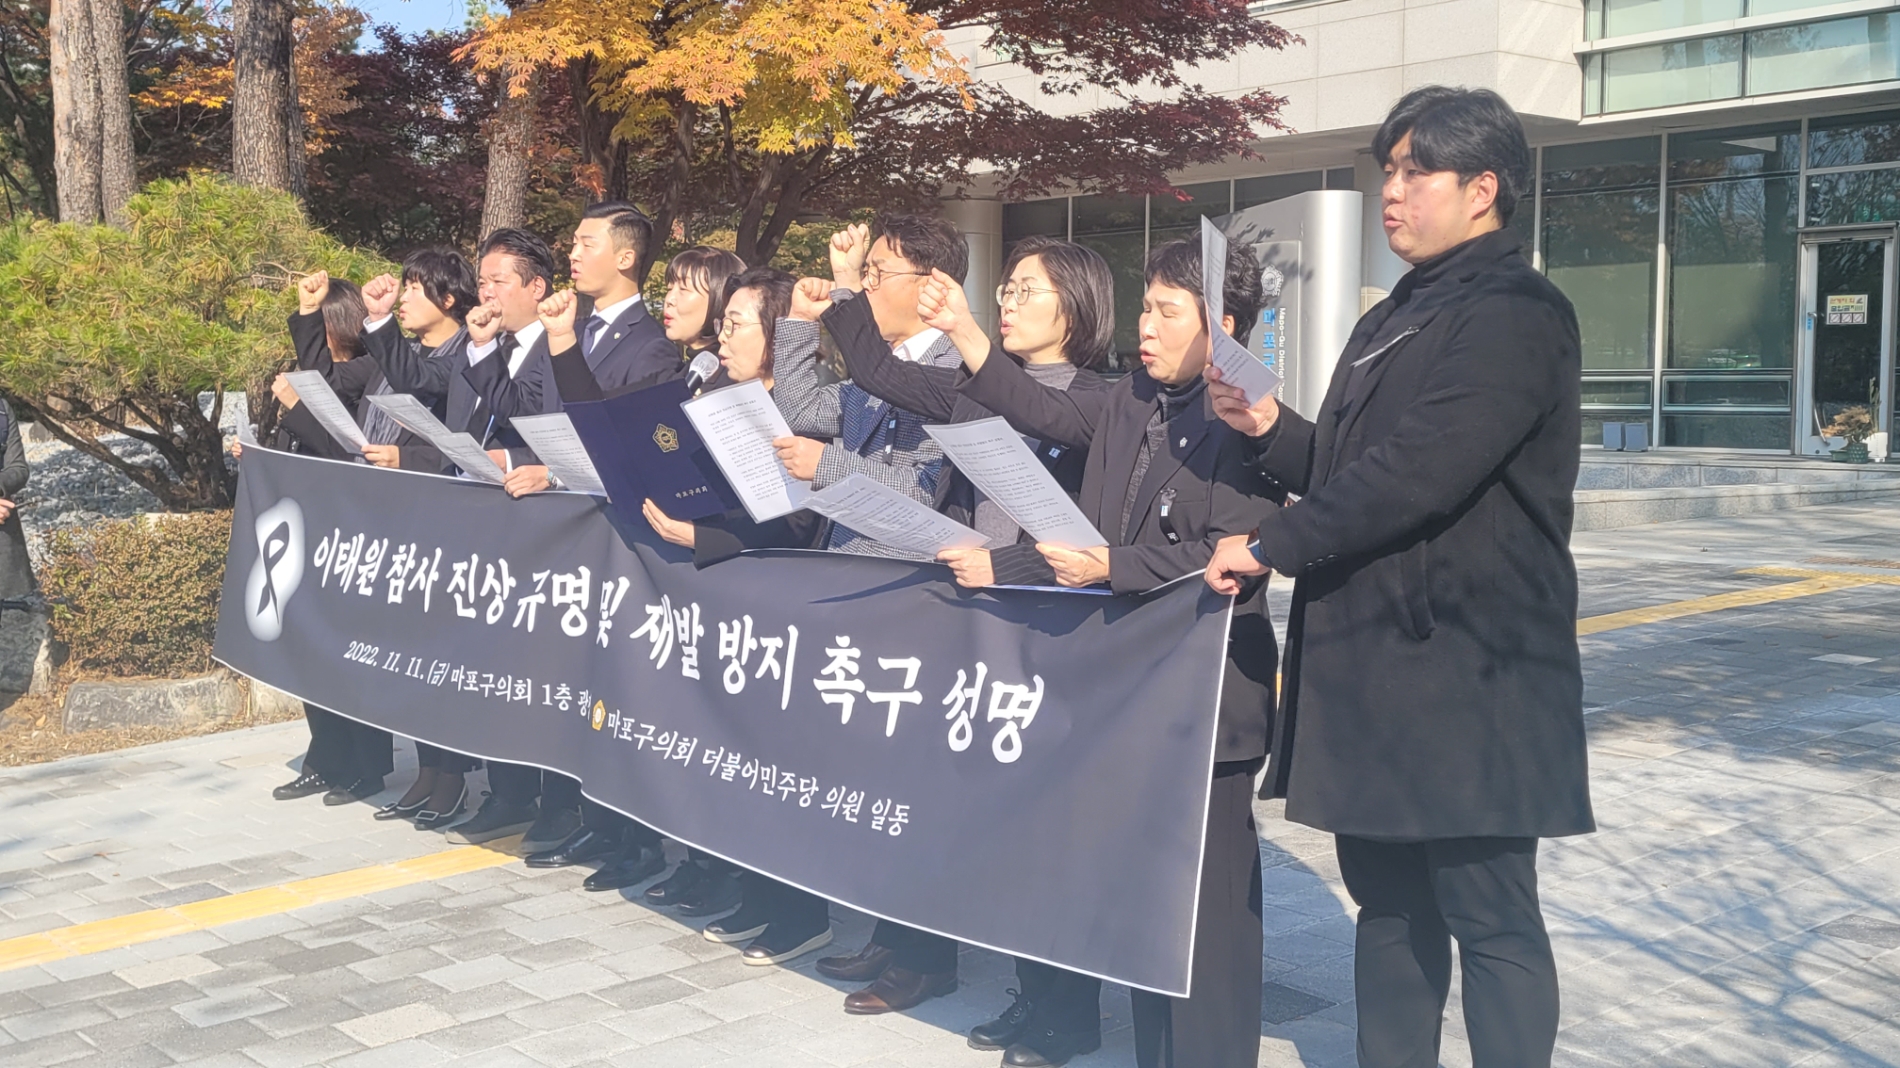 마포구의회 더불어민주당 의원들이 이태원 참사 규명을 촉구하고 있다./사진제공=주현태 기자